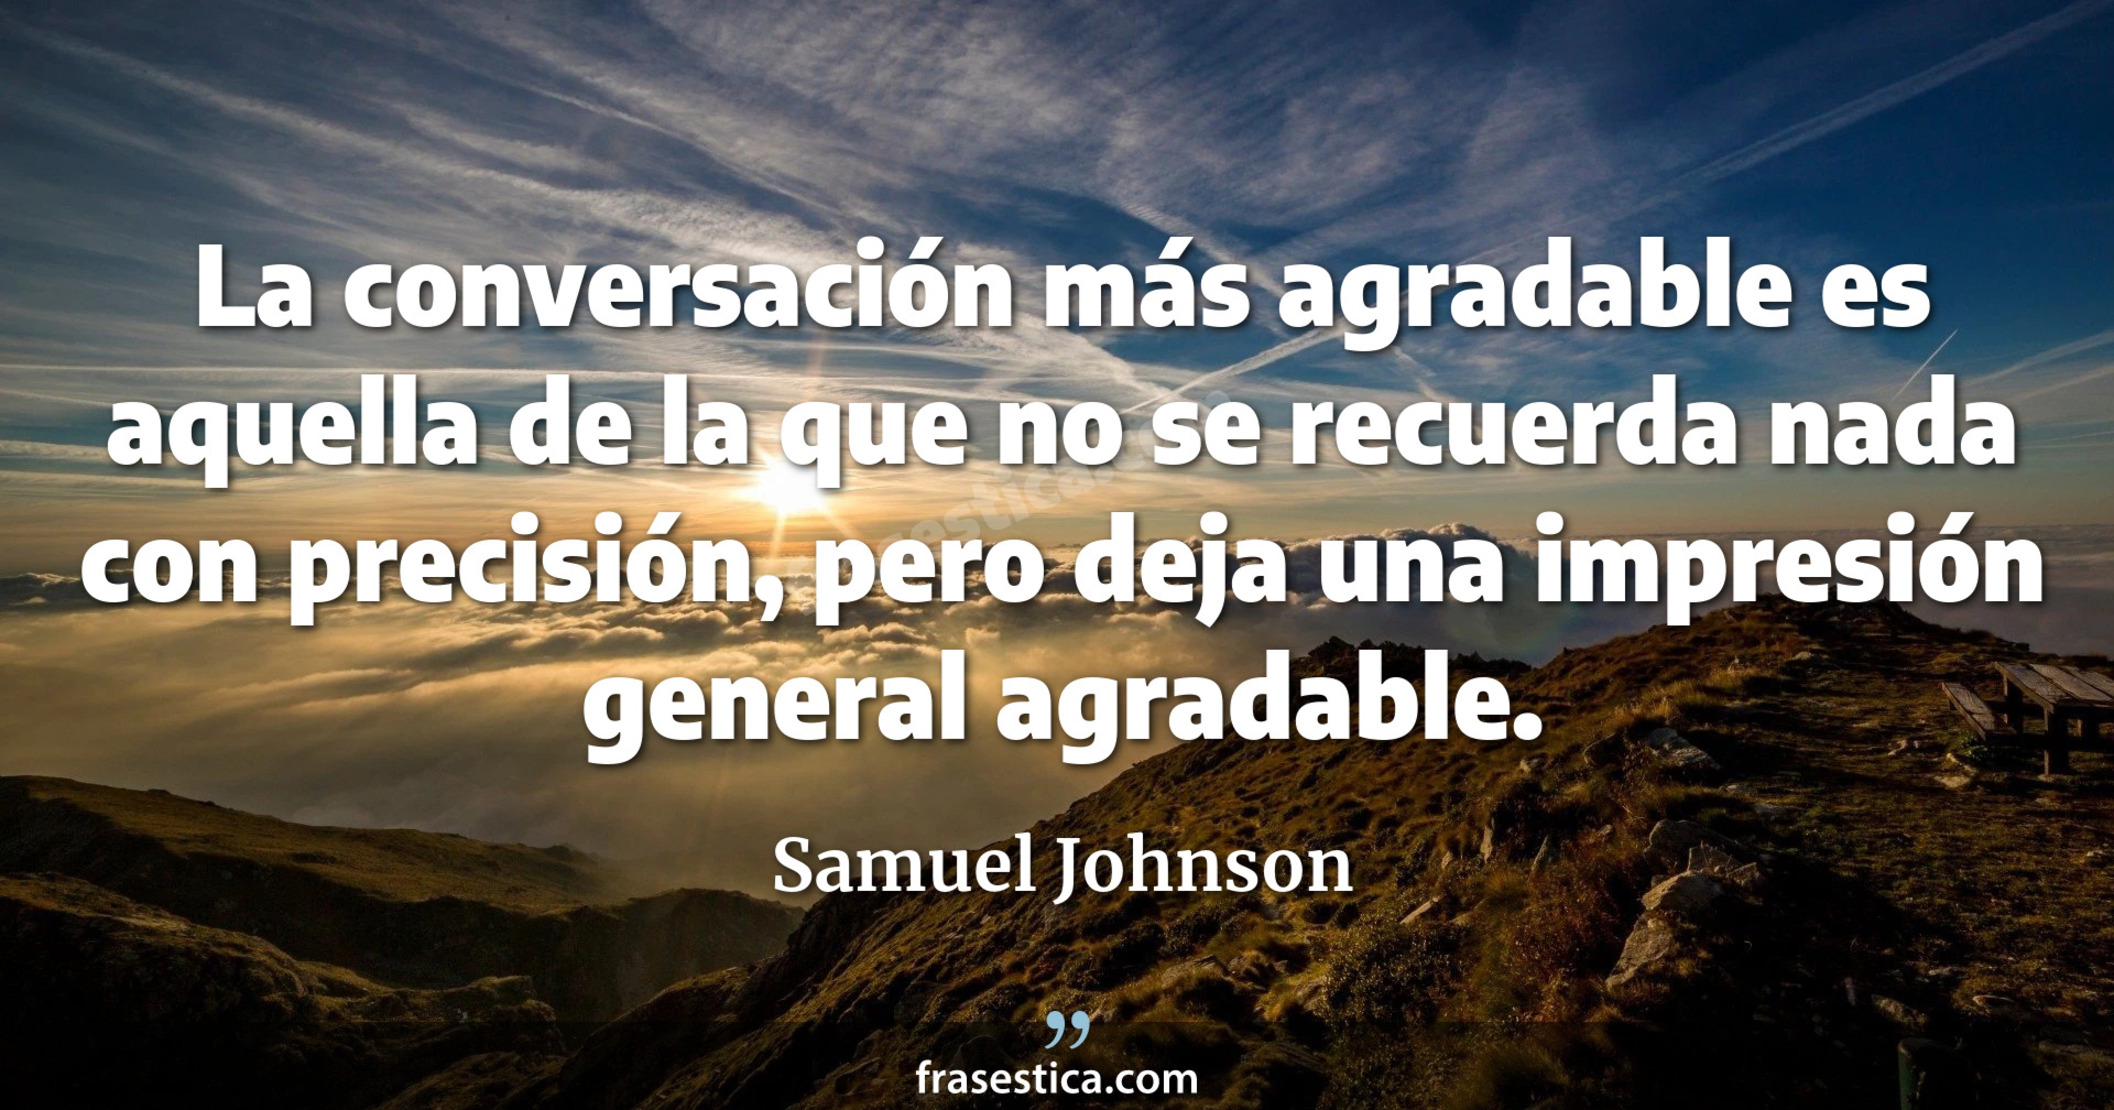 La conversación más agradable es aquella de la que no se recuerda nada con precisión, pero deja una impresión general agradable. - Samuel Johnson